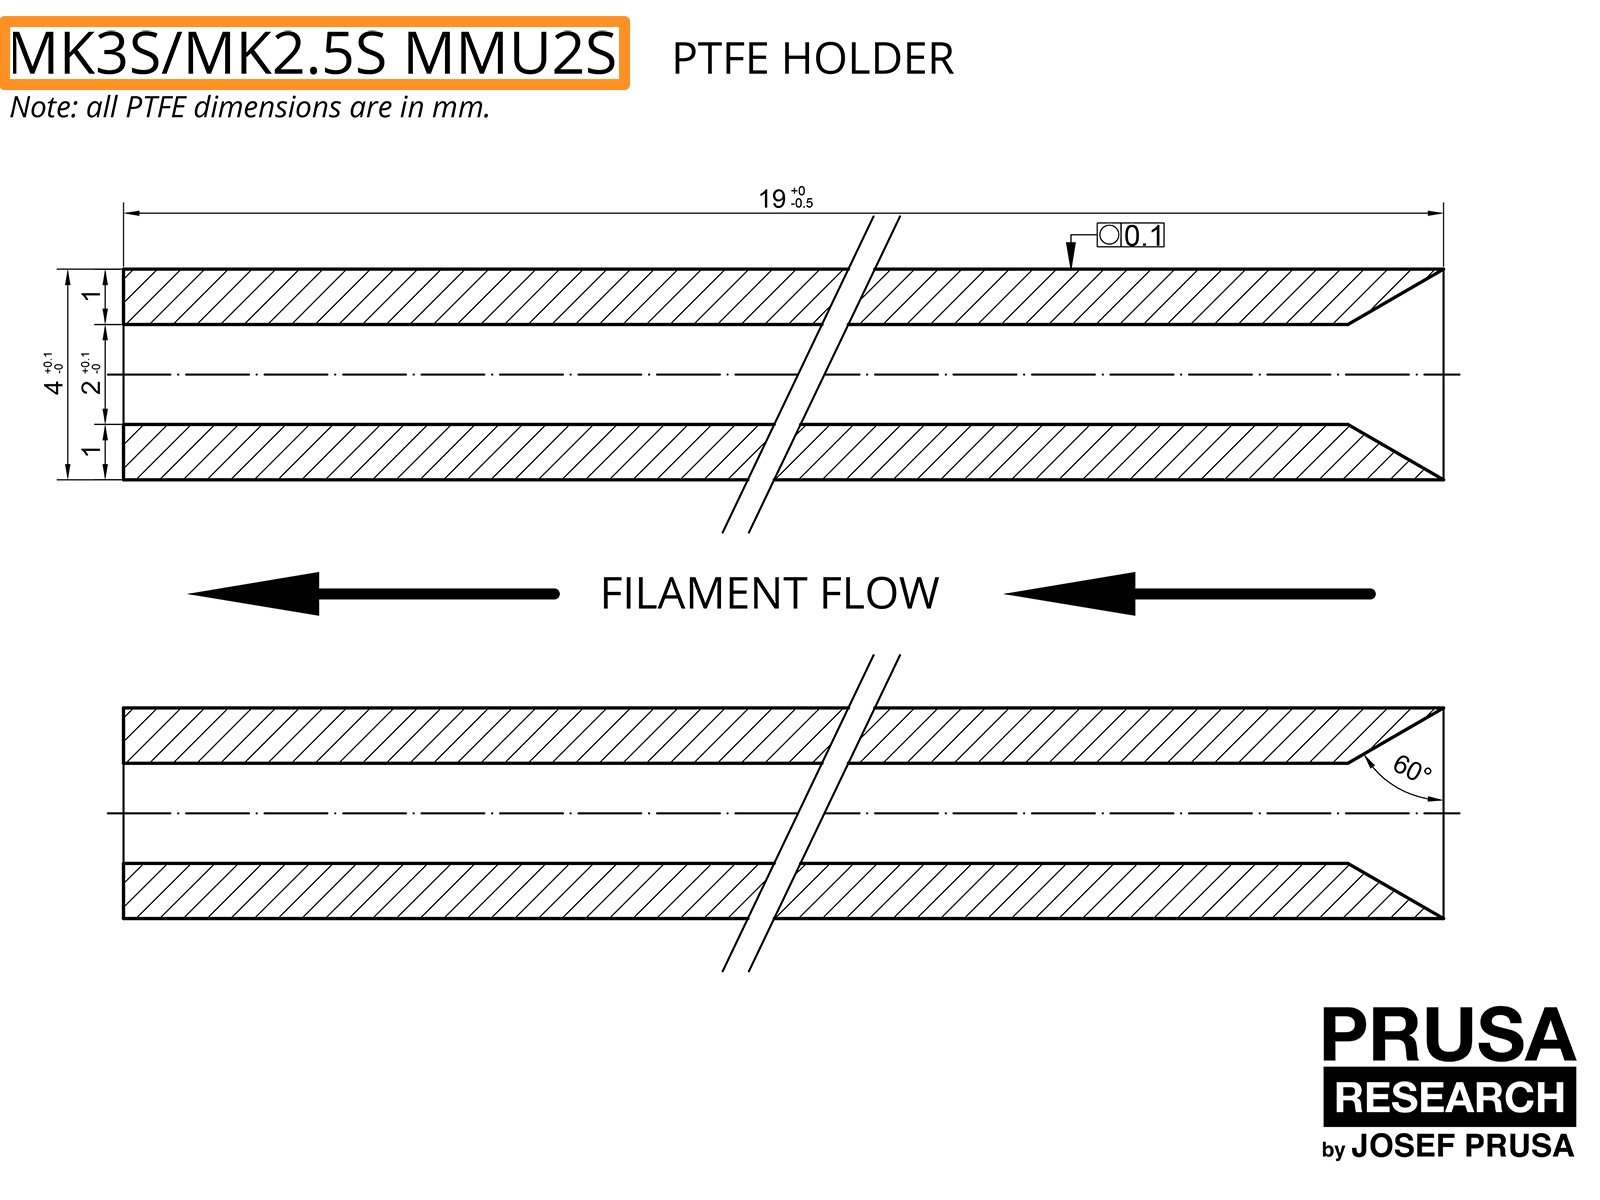 OBSOLÈTE : PTFE pour le MMU2S pour les MK3S/MK2.5S (partie 1)